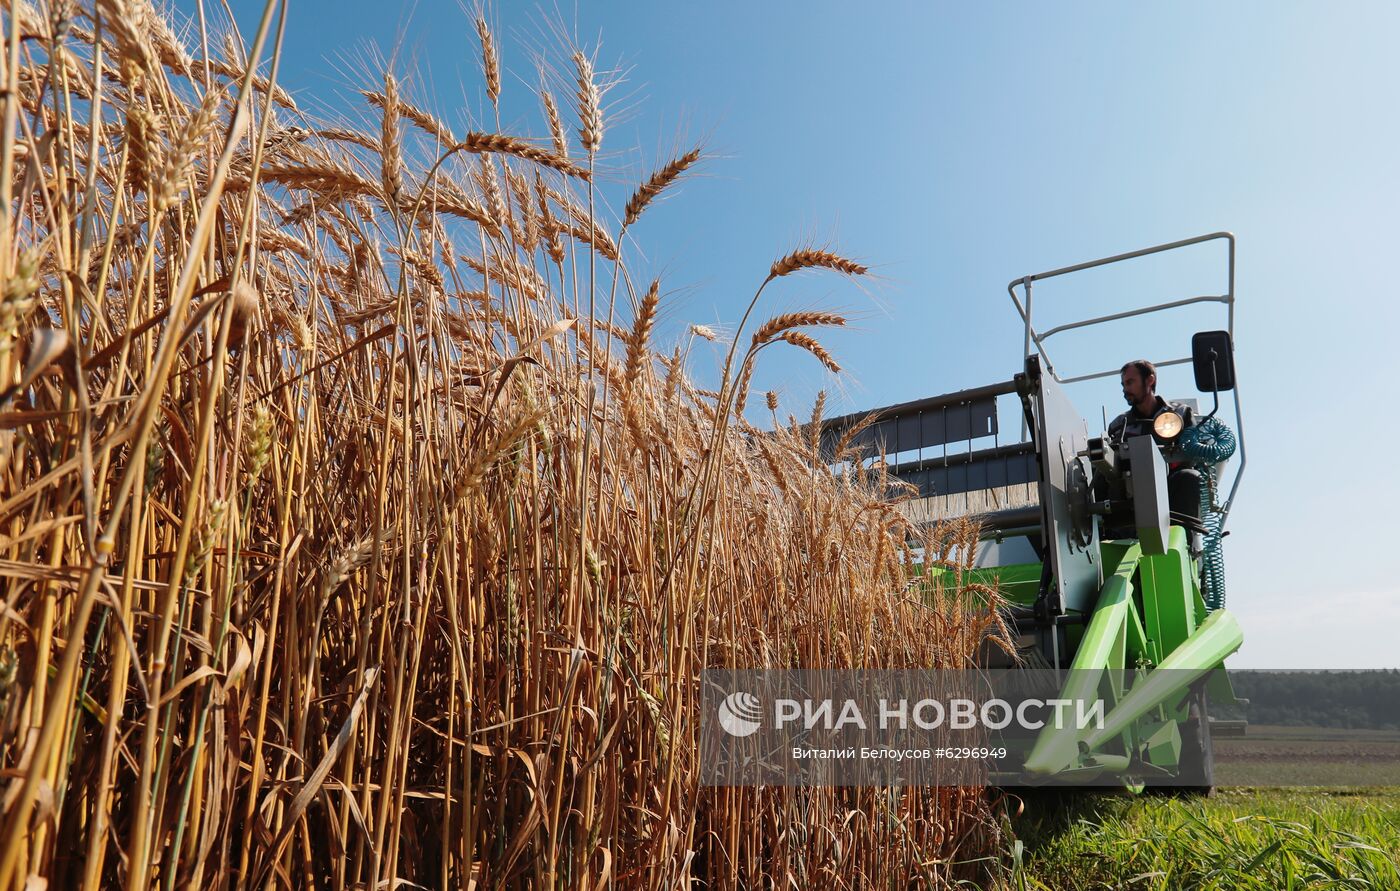 Демонстрация научных разработок по выращиванию пшеницы 